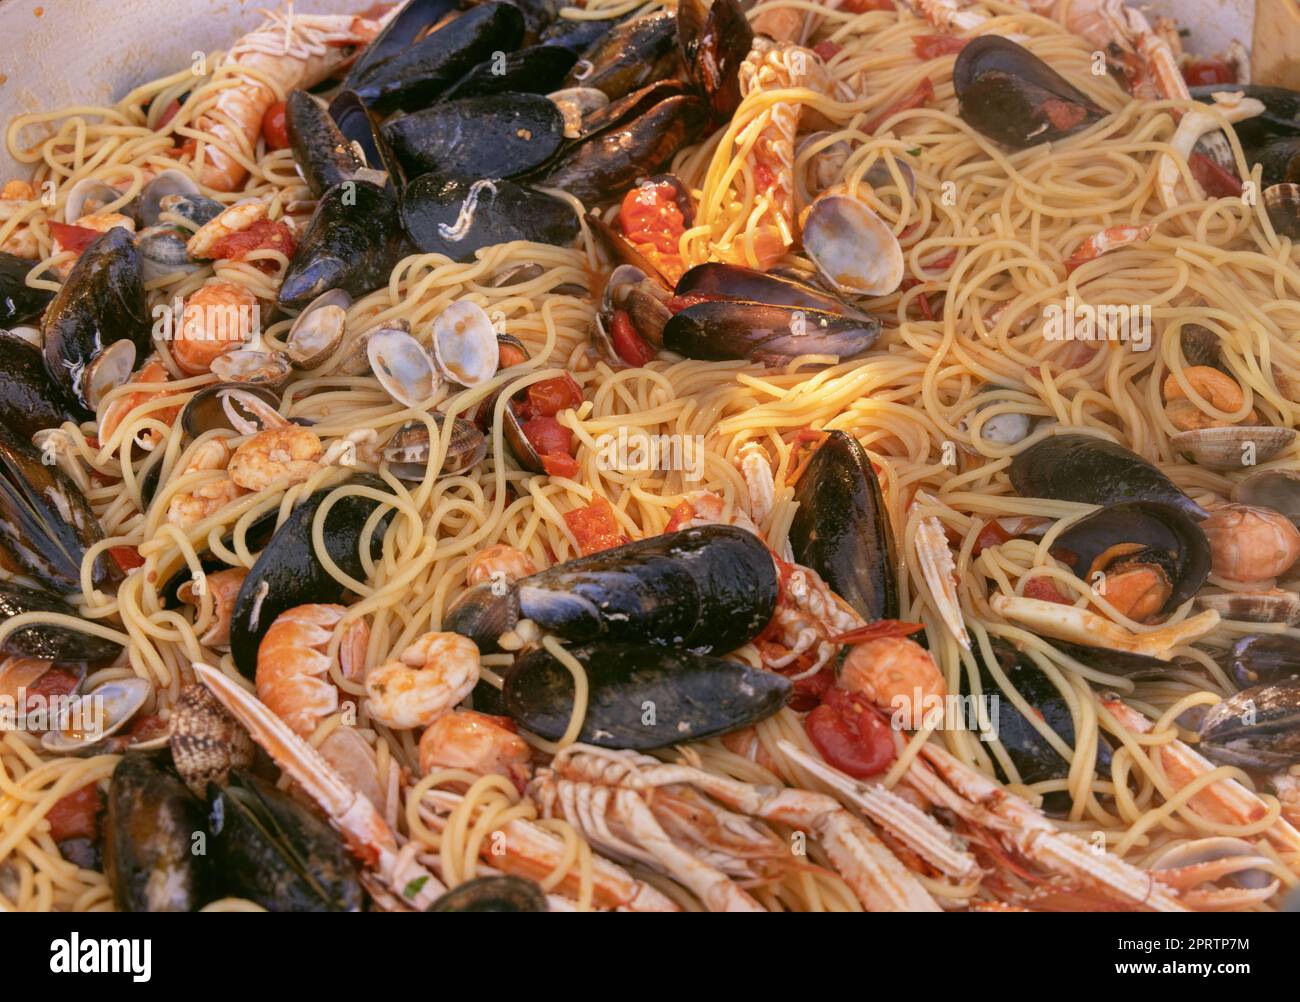 Spaghetti italiani allo scoglio, primi piani di pasta con frutti di mare e pomodori in padella Foto Stock